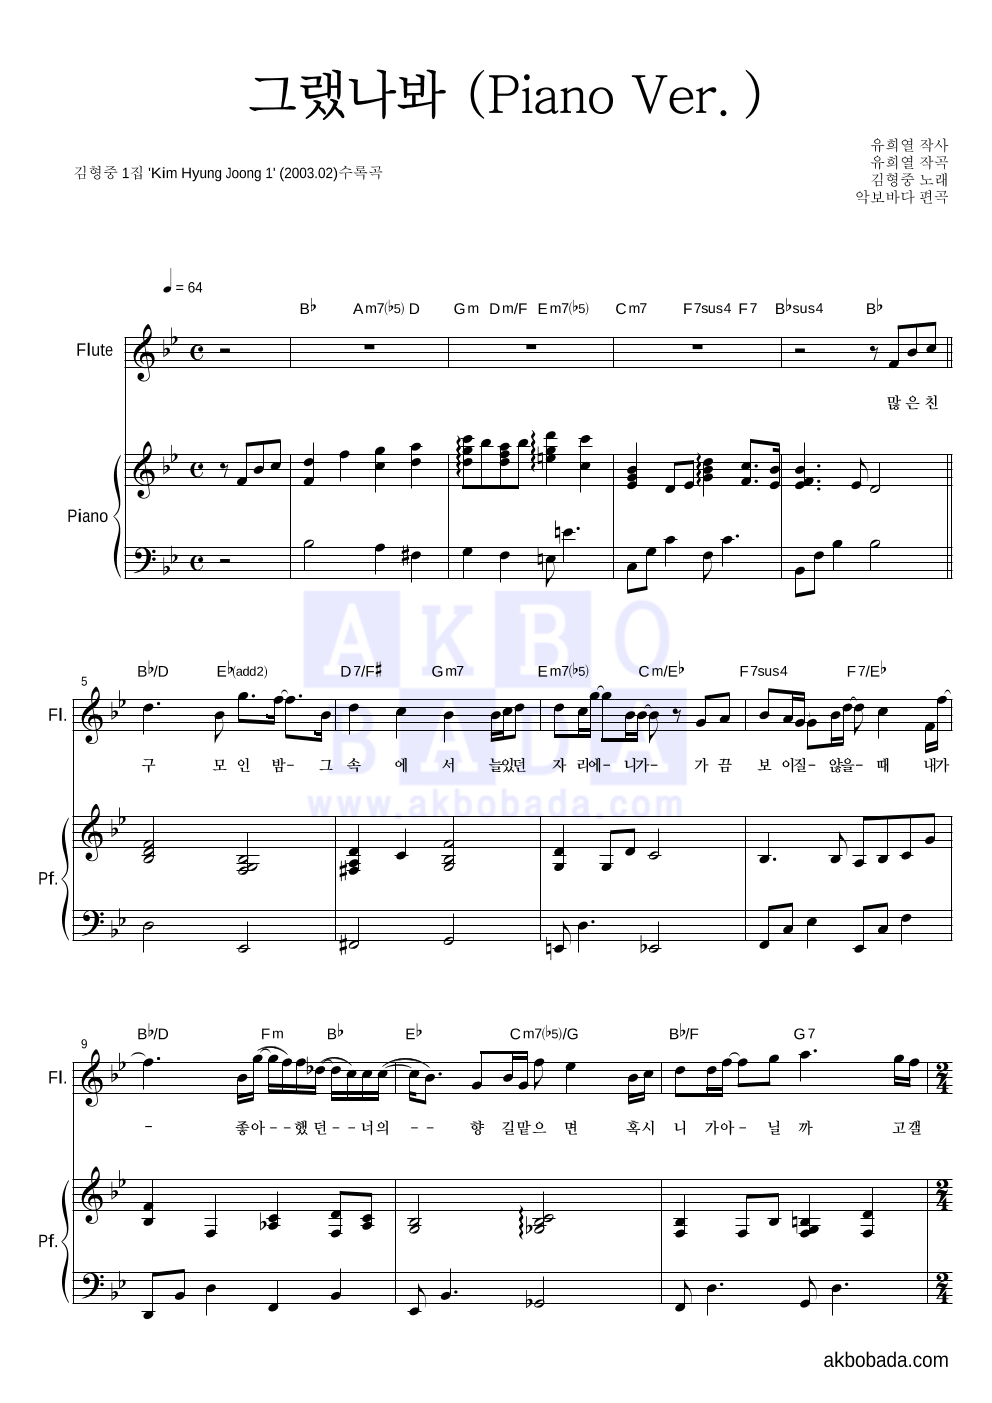 김형중 - 그랬나봐 (Piano Ver.) 플룻&피아노 악보 